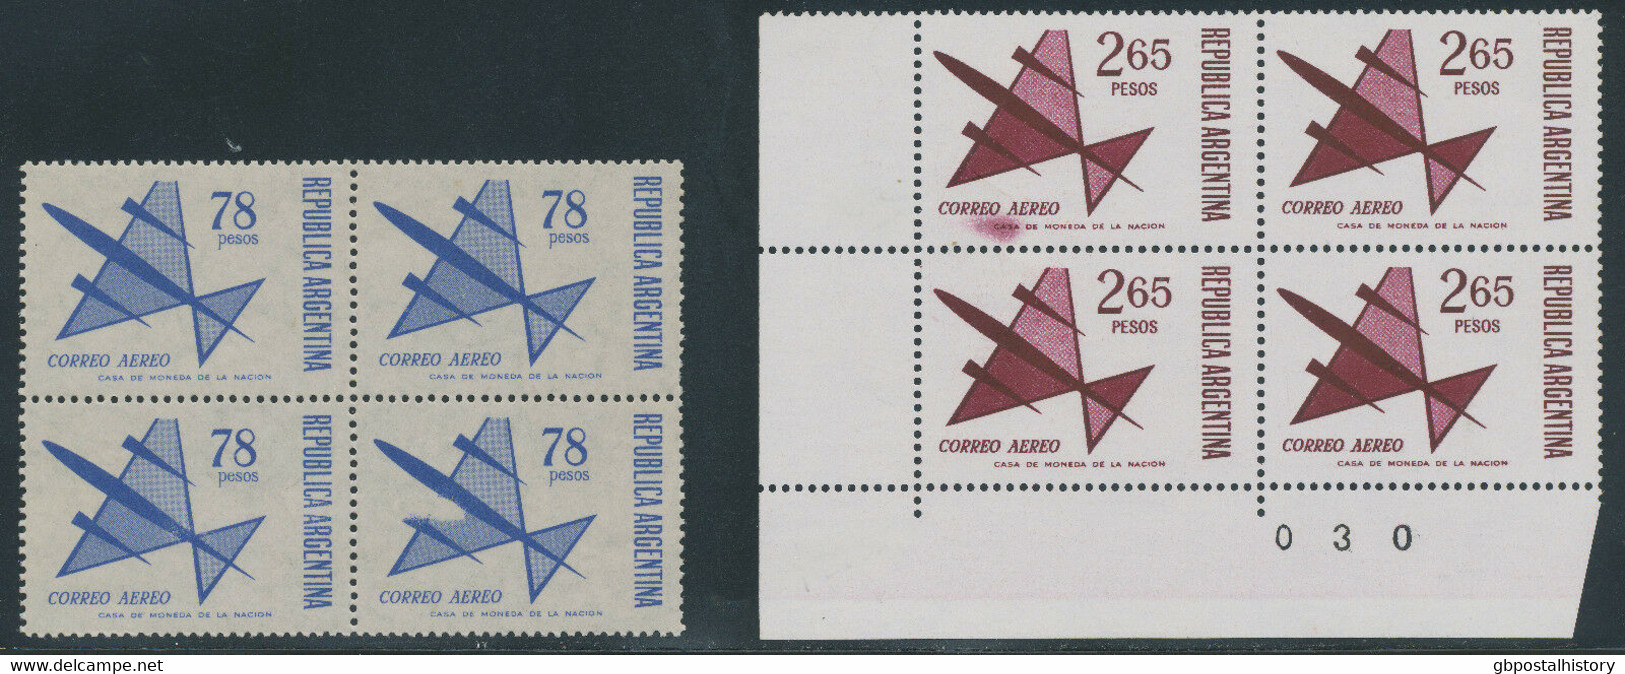 ARGENTINIEN 1967 78 P 1974 2.65 P Flp.-Ausgabe Postfrische Viererblöcke ABARTEN - Aéreo